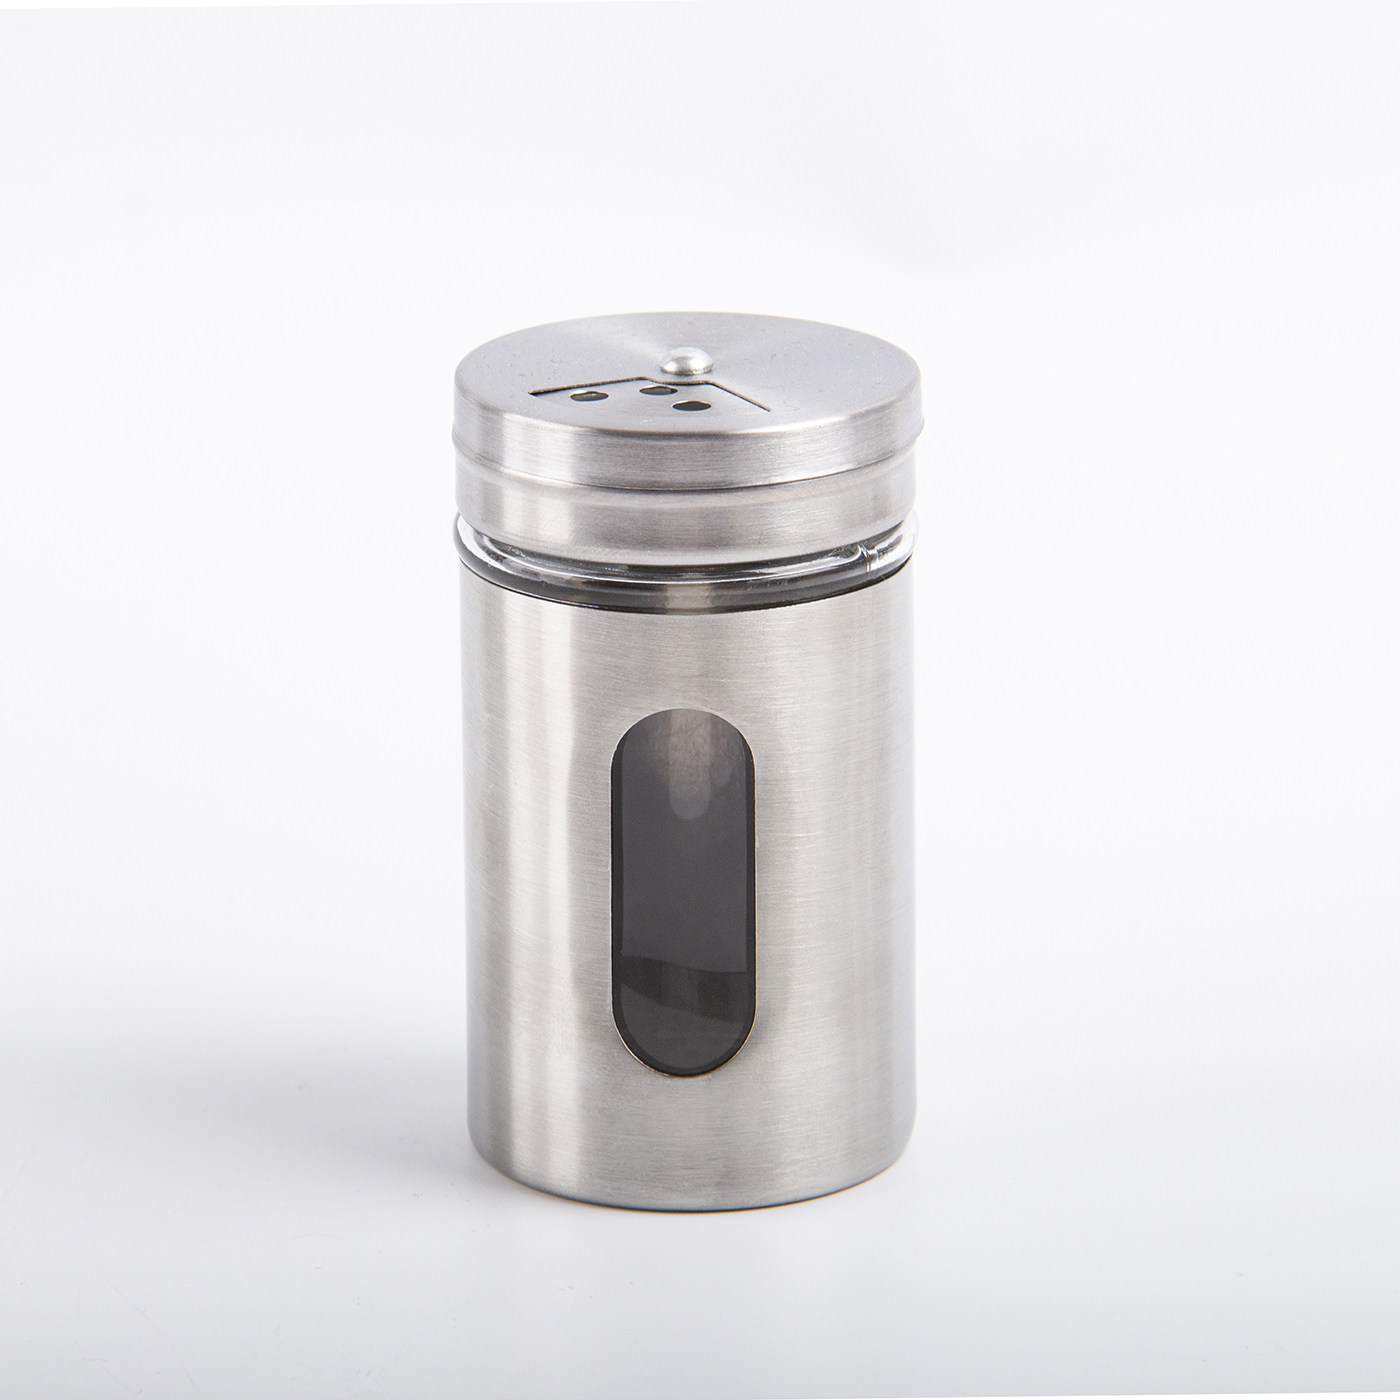 Stainless Steel Salt And Pepper Shaker3